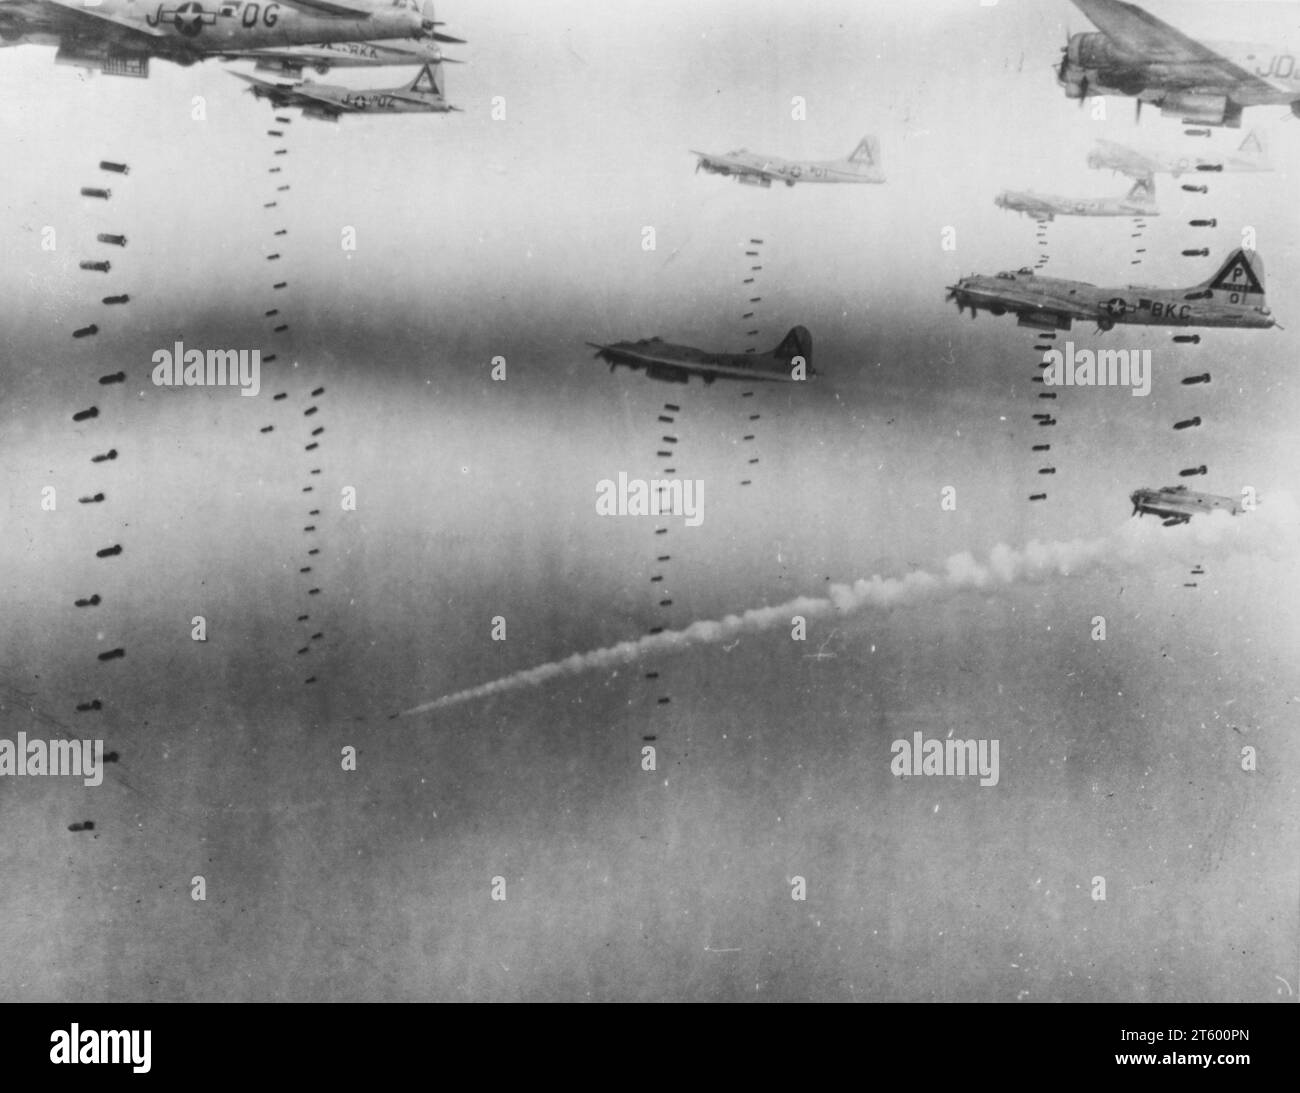 Les bombes pleuvent sur la route d'évasion allemande -- se concentrant sur le dynamitage de trois centres ferroviaires dans la région de Dresde, Choke points pour les Allemands qui se dirigent vers le sud-est dans les montagnes, Boeing B-17 Flying Forteresses of US 8Th AF le 17 1945 avril a explosé la cible Banque D'Images